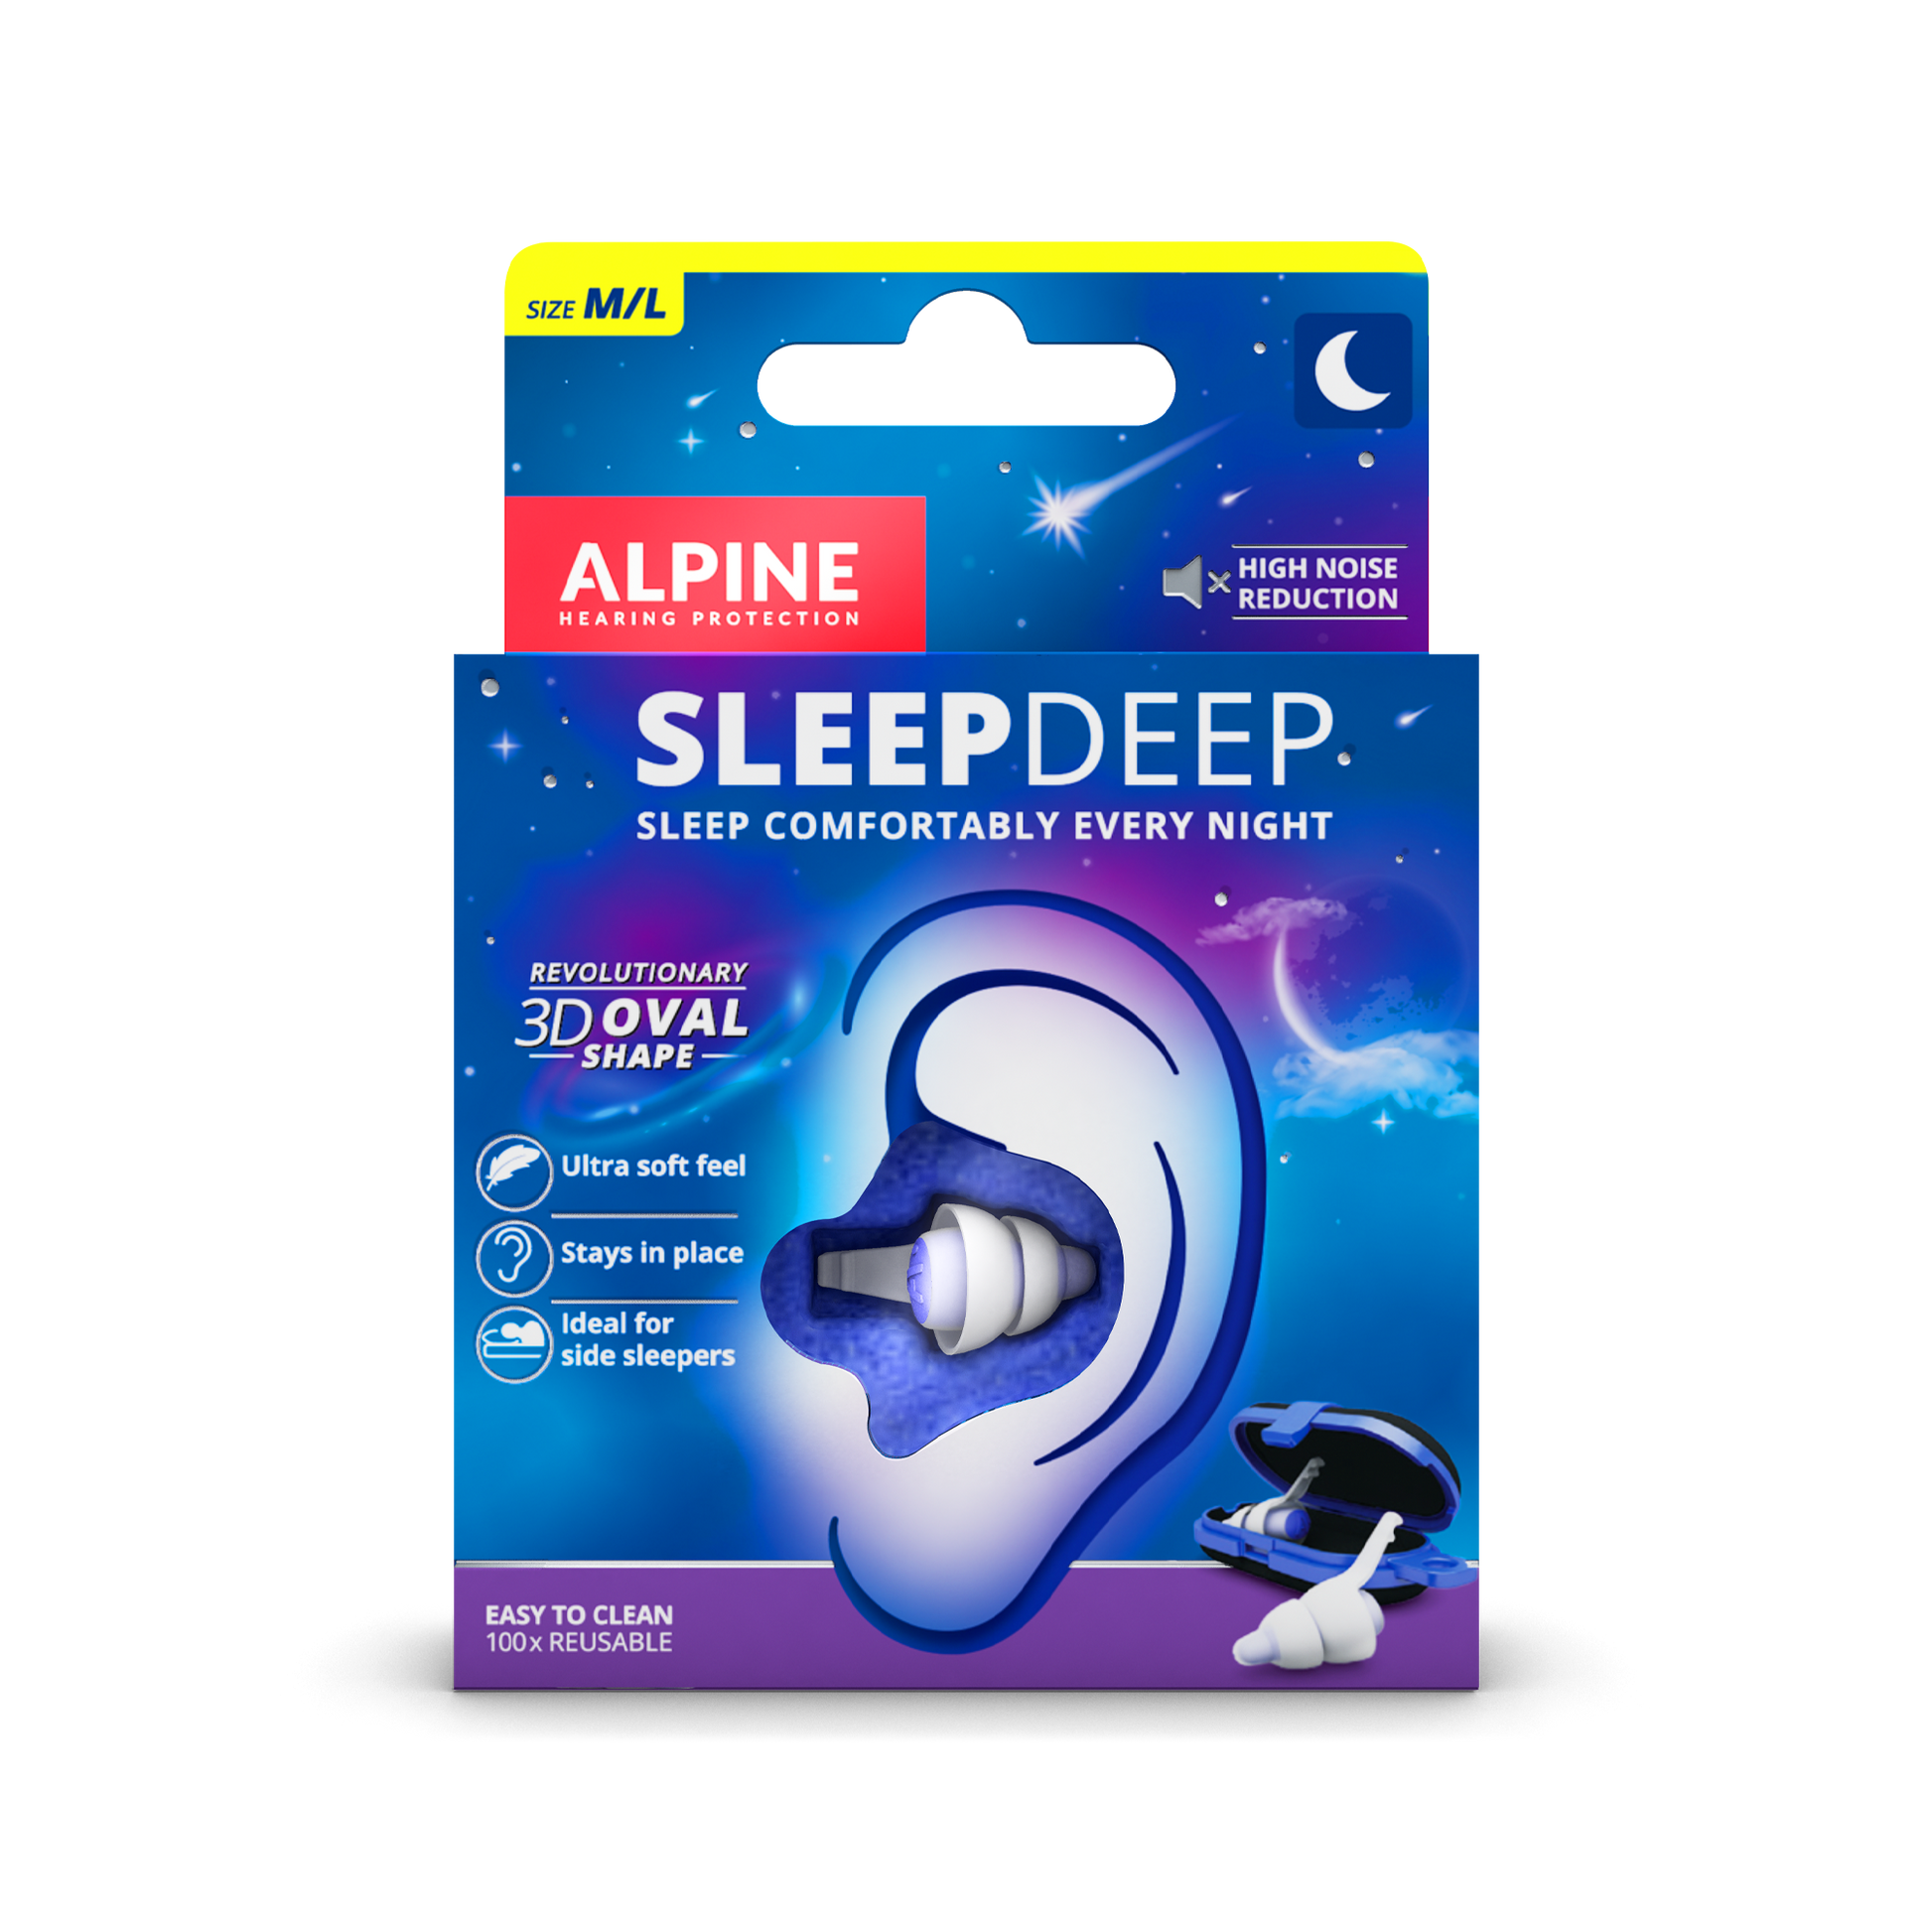 Happy Ears ear plugs - my favorite for sleeping. For sore ear